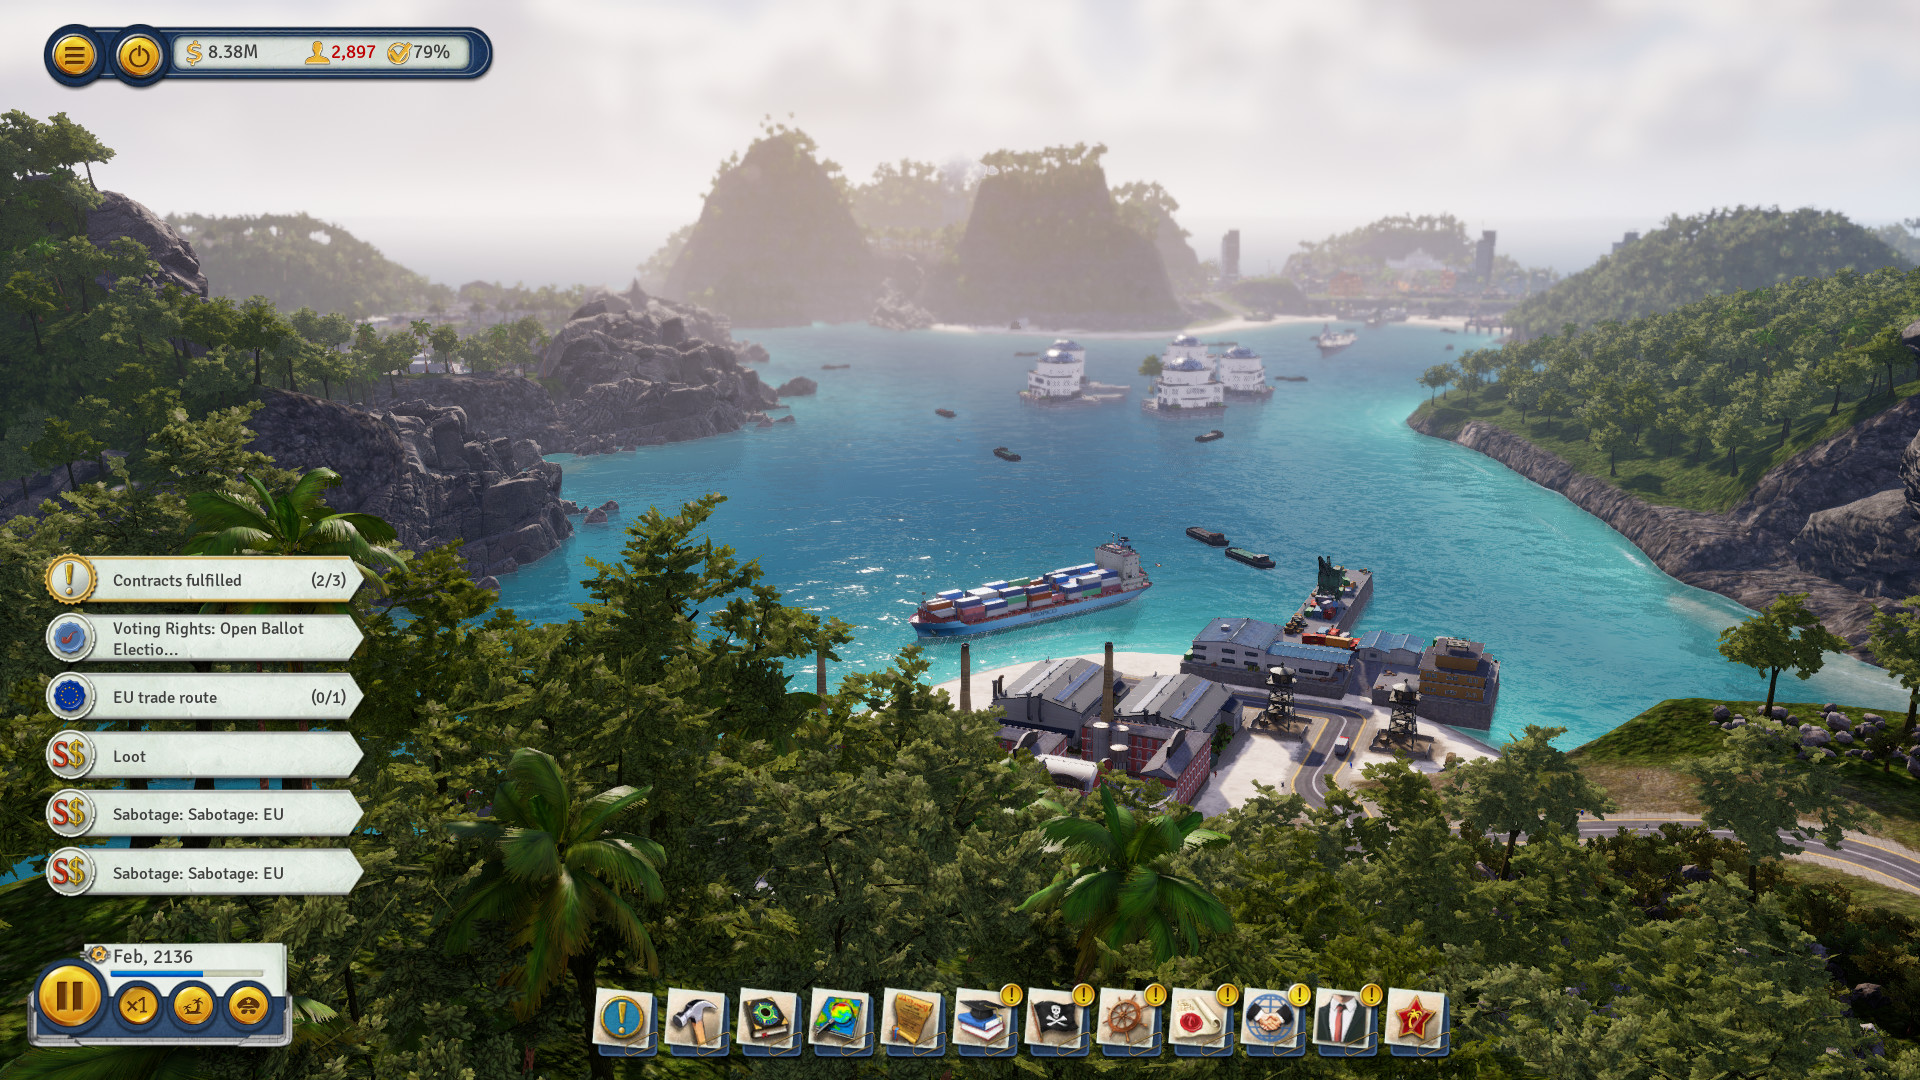 Tropico 6 with a warranty ✅ | offline